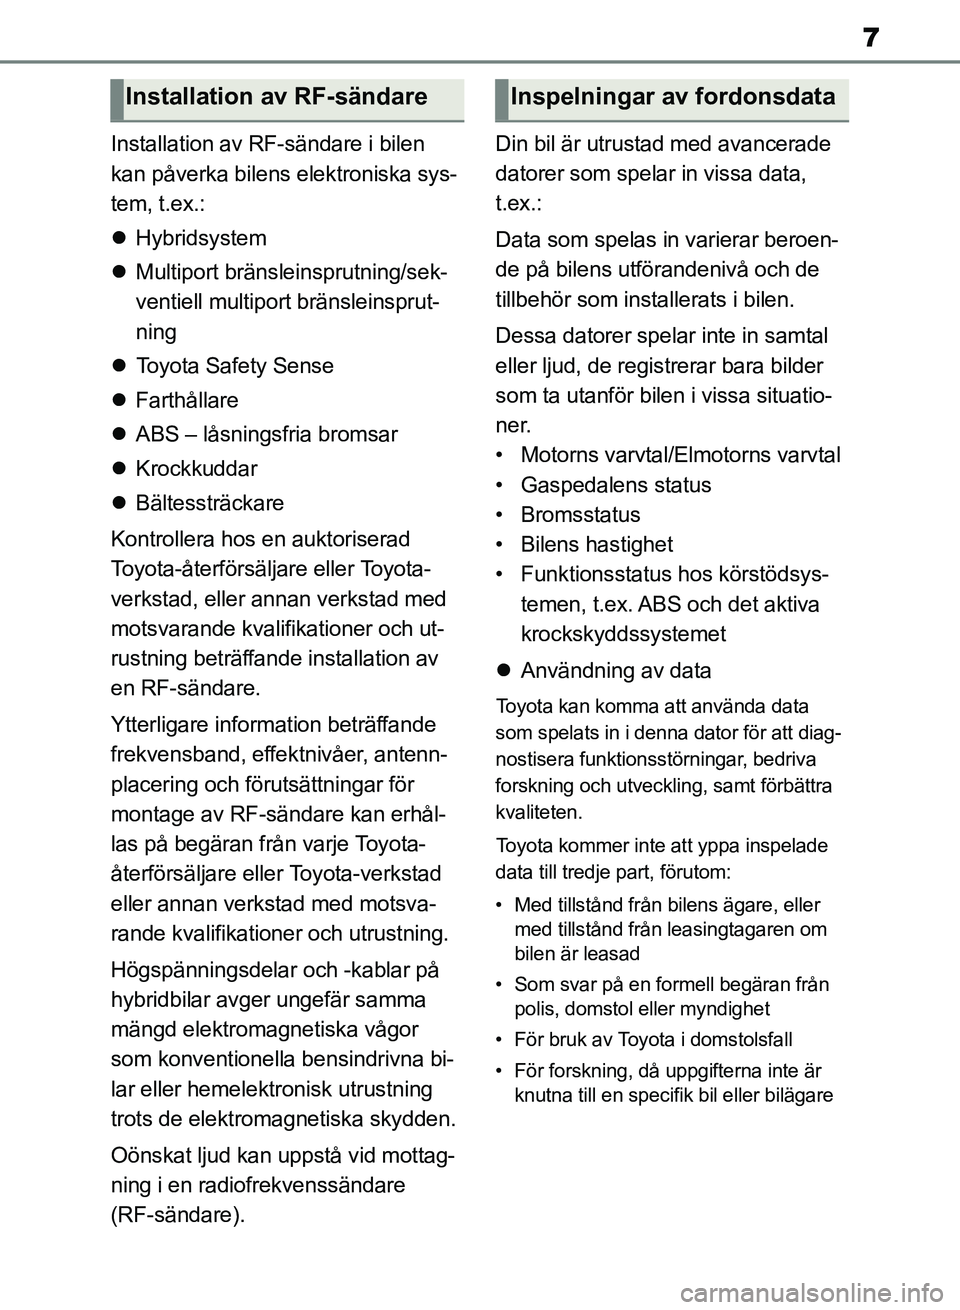 TOYOTA RAV4 2018  Bruksanvisningar (in Swedish) 7
Installation av RF-sändare i bilen 
kan påverka bilens elektroniska sys-
tem, t.ex.:
 Hybridsystem
 Multiport bränsl einsprutning/sek-
ventiell multiport bränsleinsprut-
ning
 Toyota Sa